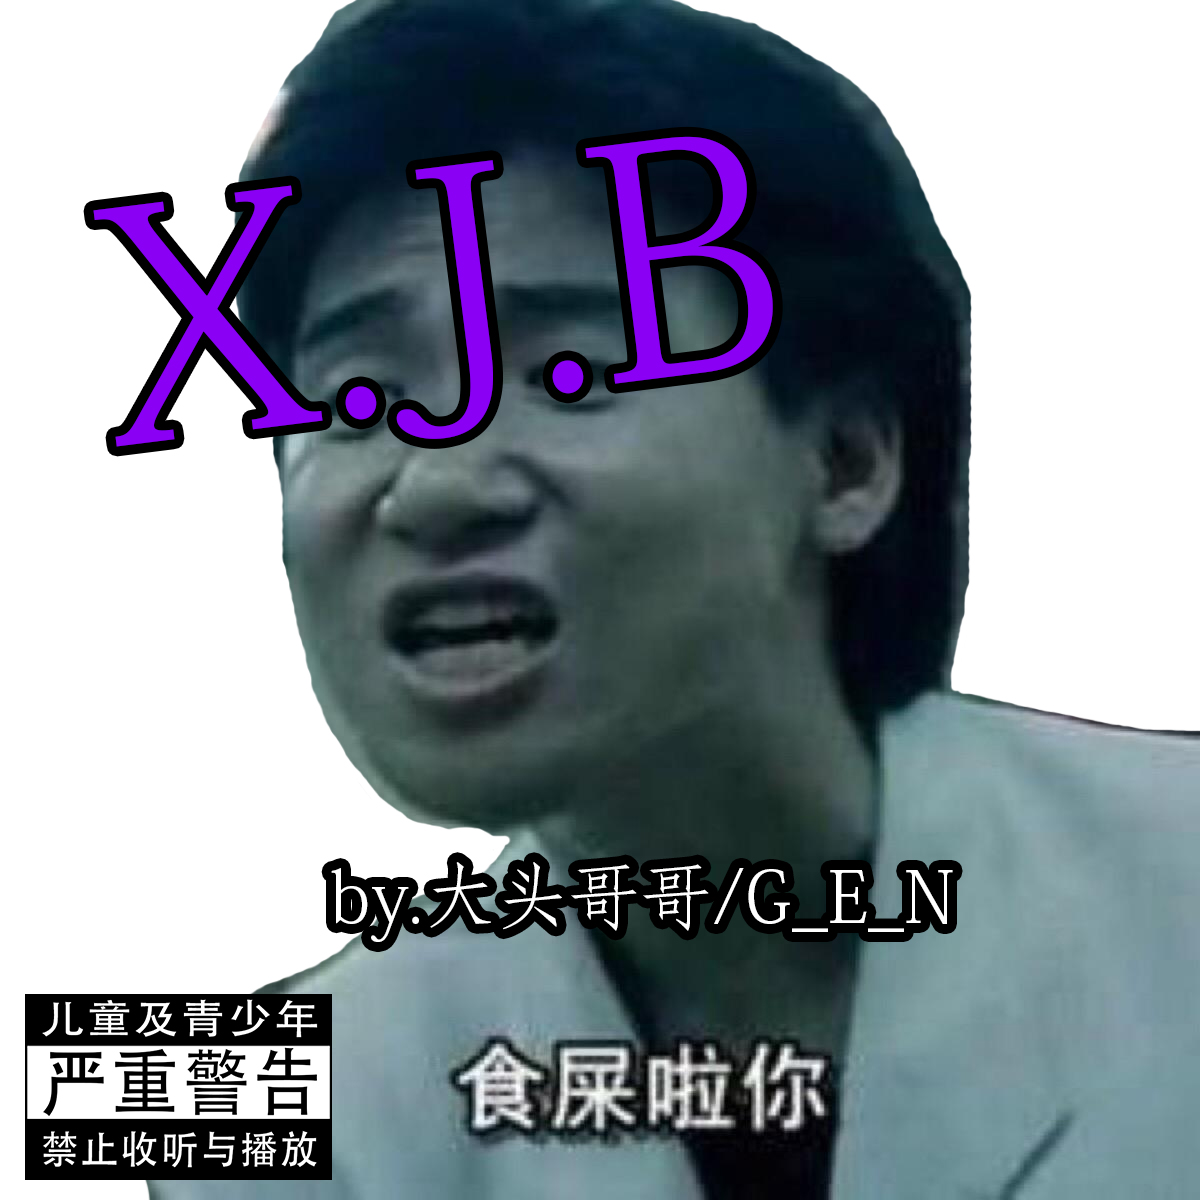 X.J.B